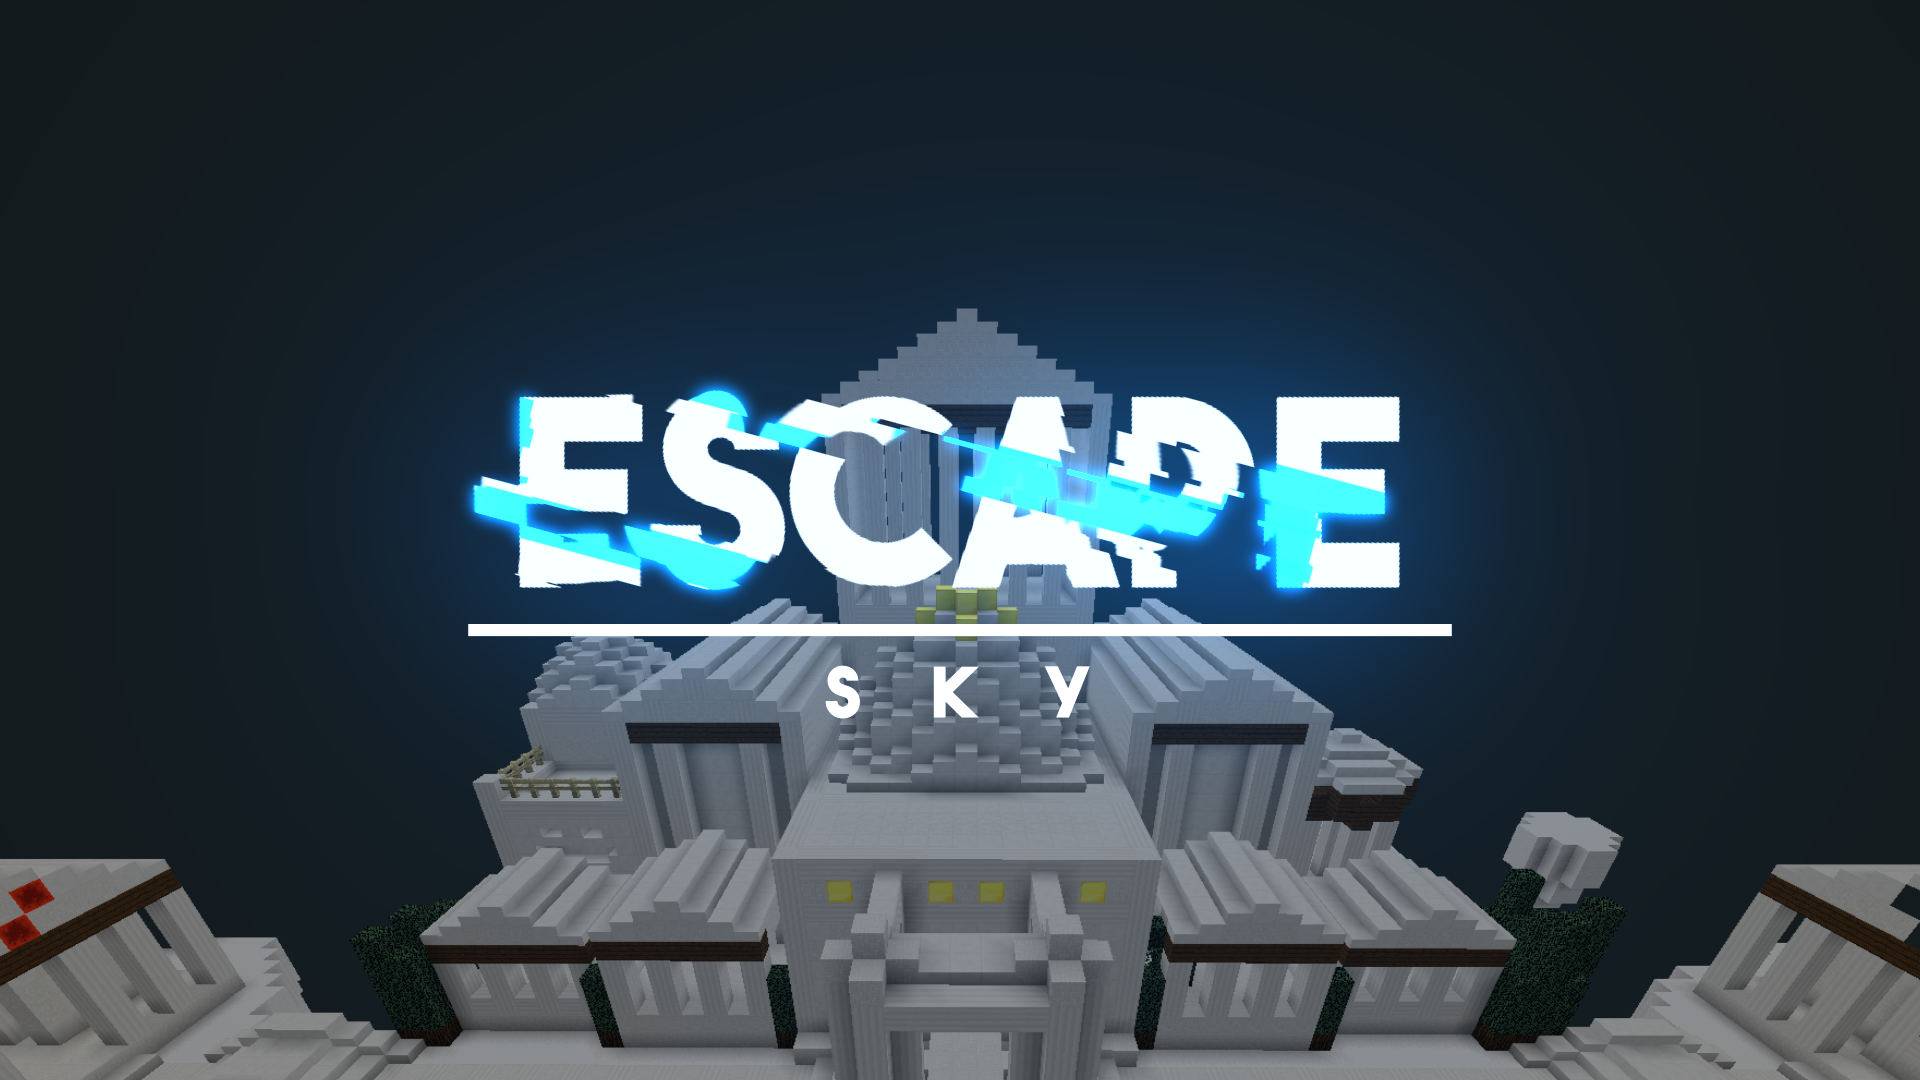 Escape: Sky